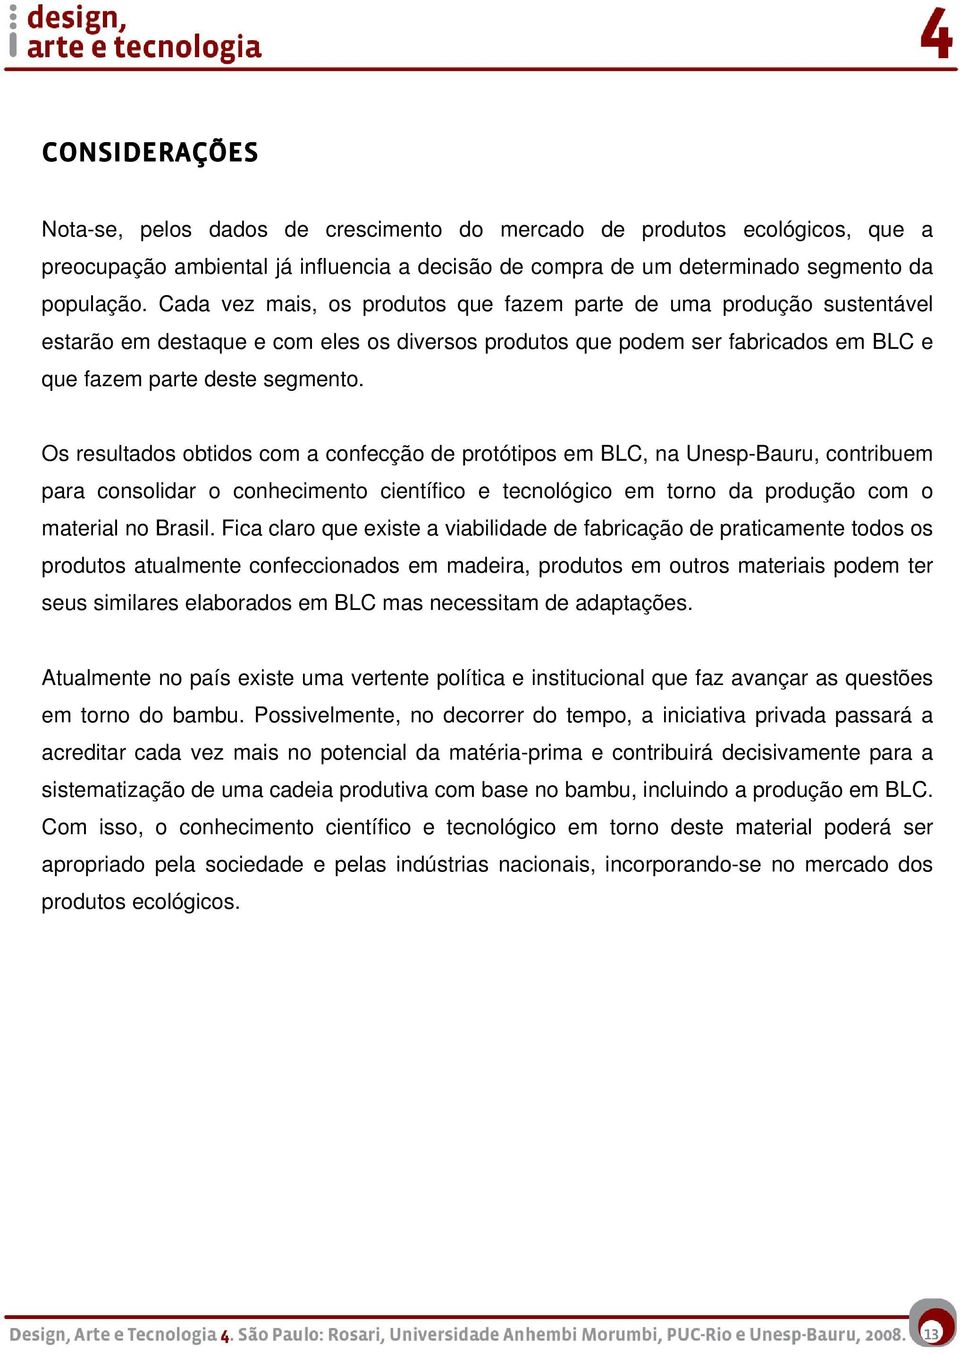 Os resultados obtidos com a confecção de protótipos em BLC, na Unesp-Bauru, contribuem para consolidar o conhecimento científico e tecnológico em torno da produção com o material no Brasil.